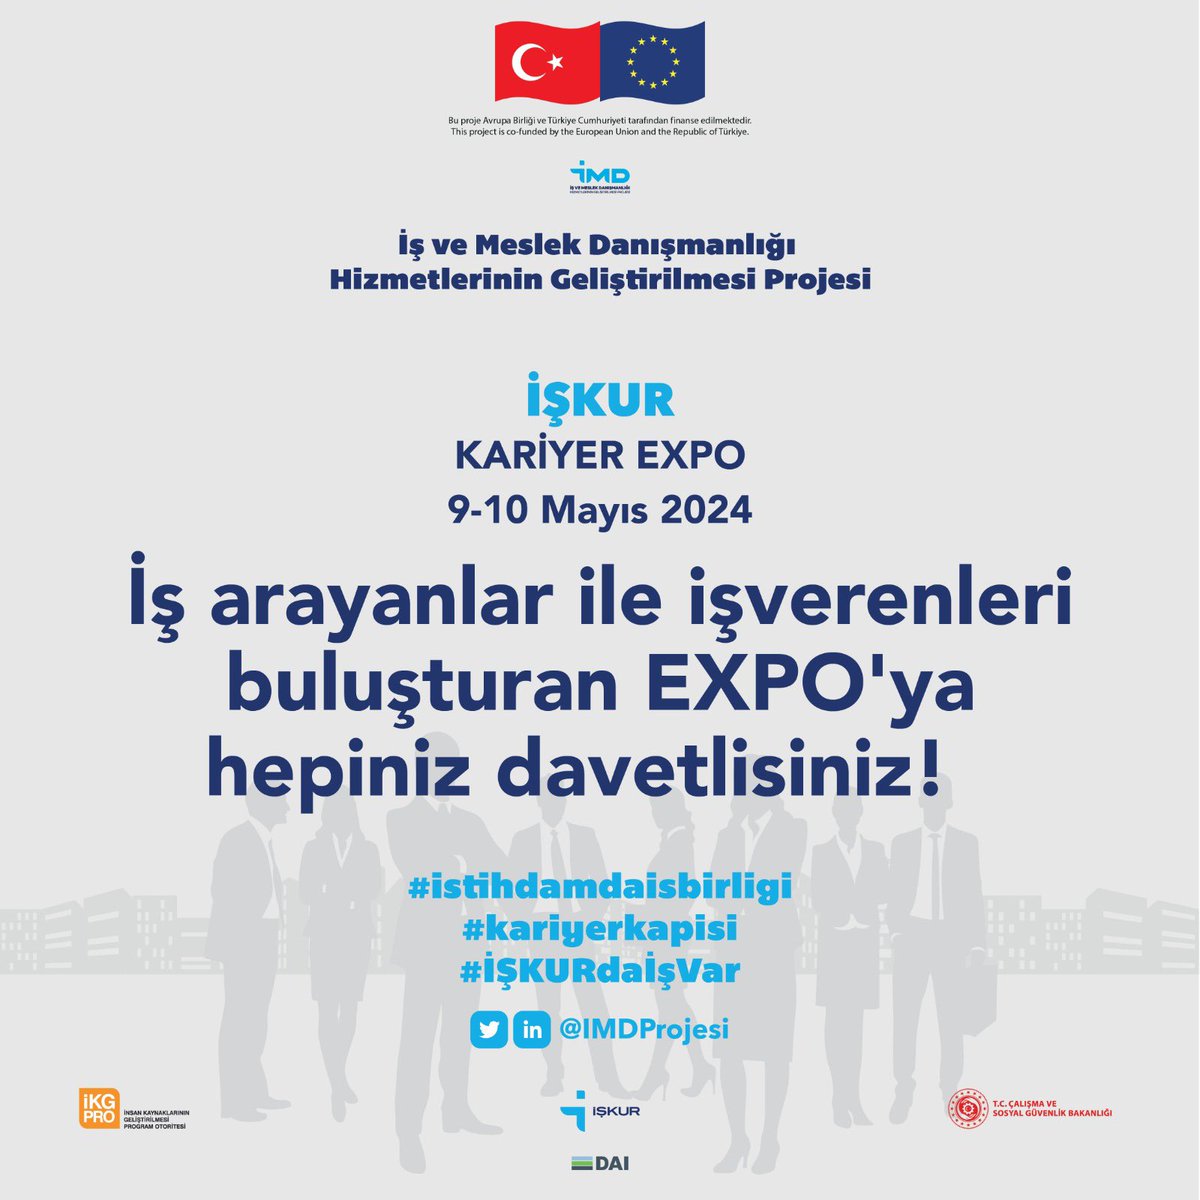 İŞKUR Kariyer EXPO 9-10 Mayıs tarihlerinde Sivas'ta! İş arayanlar ile işverenleri buluşturacak EXPO'ya hepiniz davetlisiniz!  
#kariyerkapisi #istihdamdaisbirligi #İŞKURdaİşVar #iskur #sivasiskur @TurkiyeIsKurumu